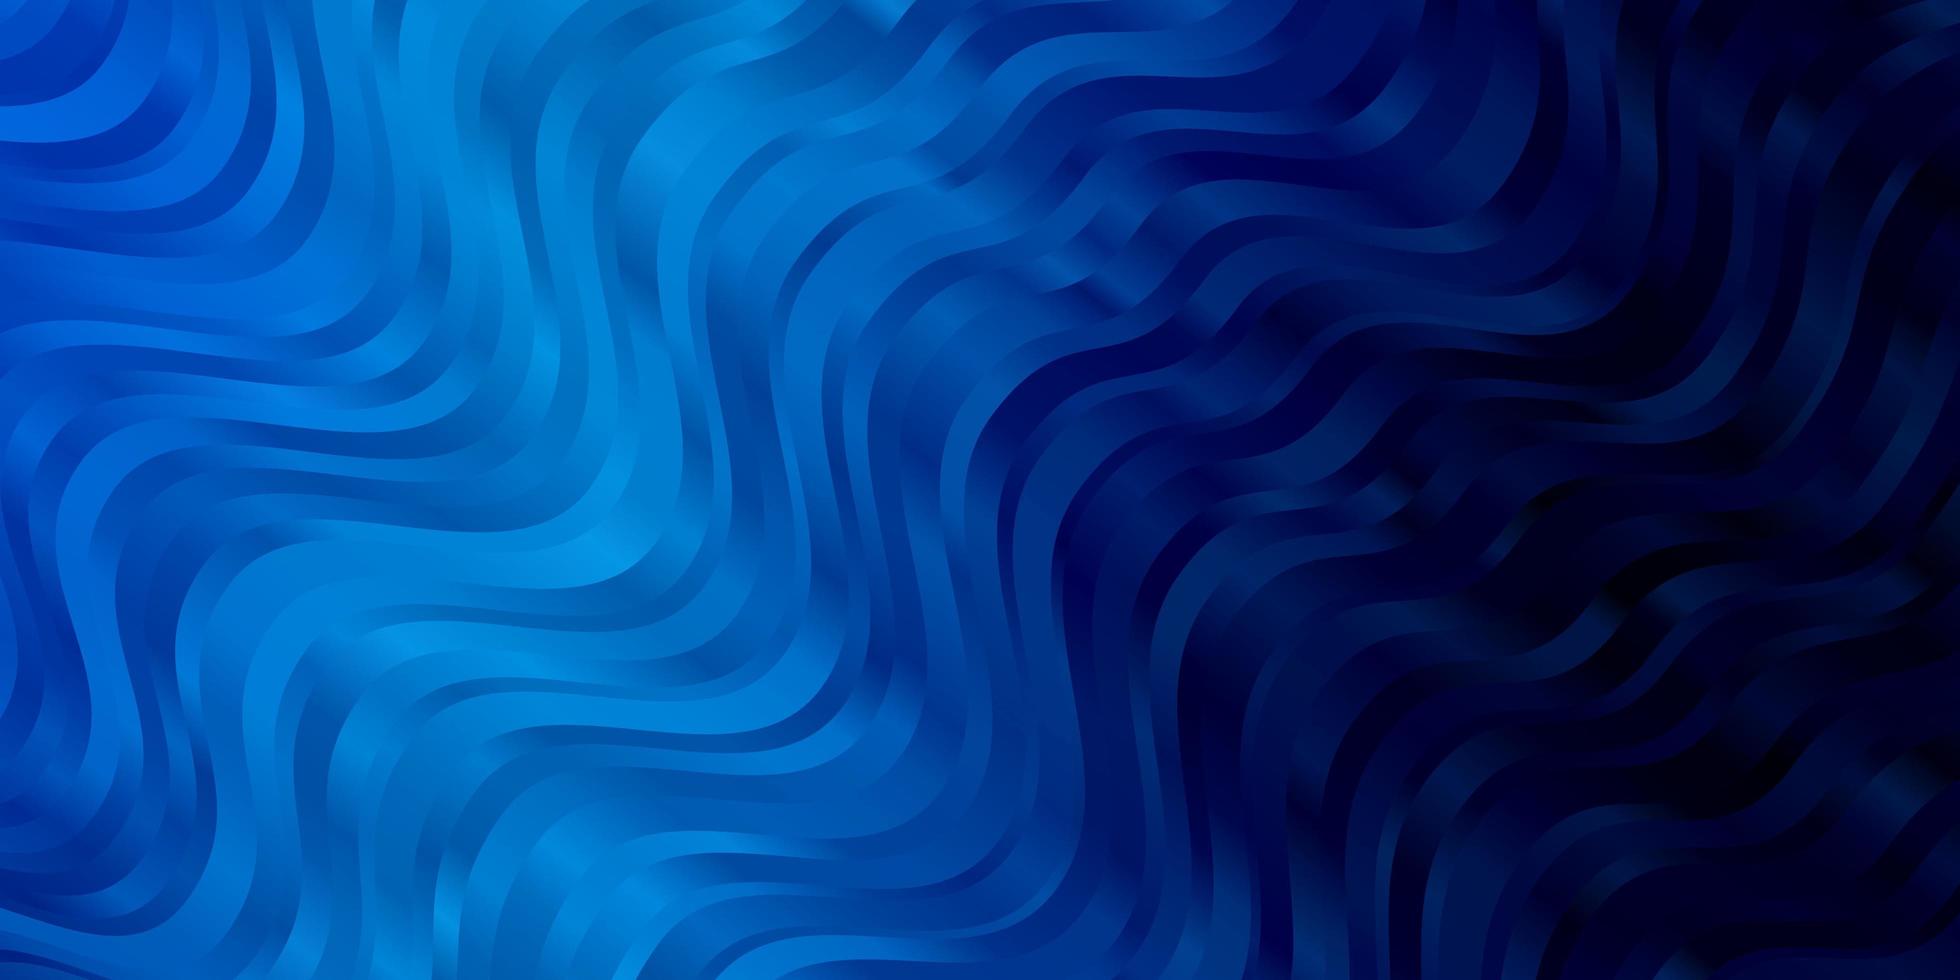 sfondo vettoriale blu scuro con curve